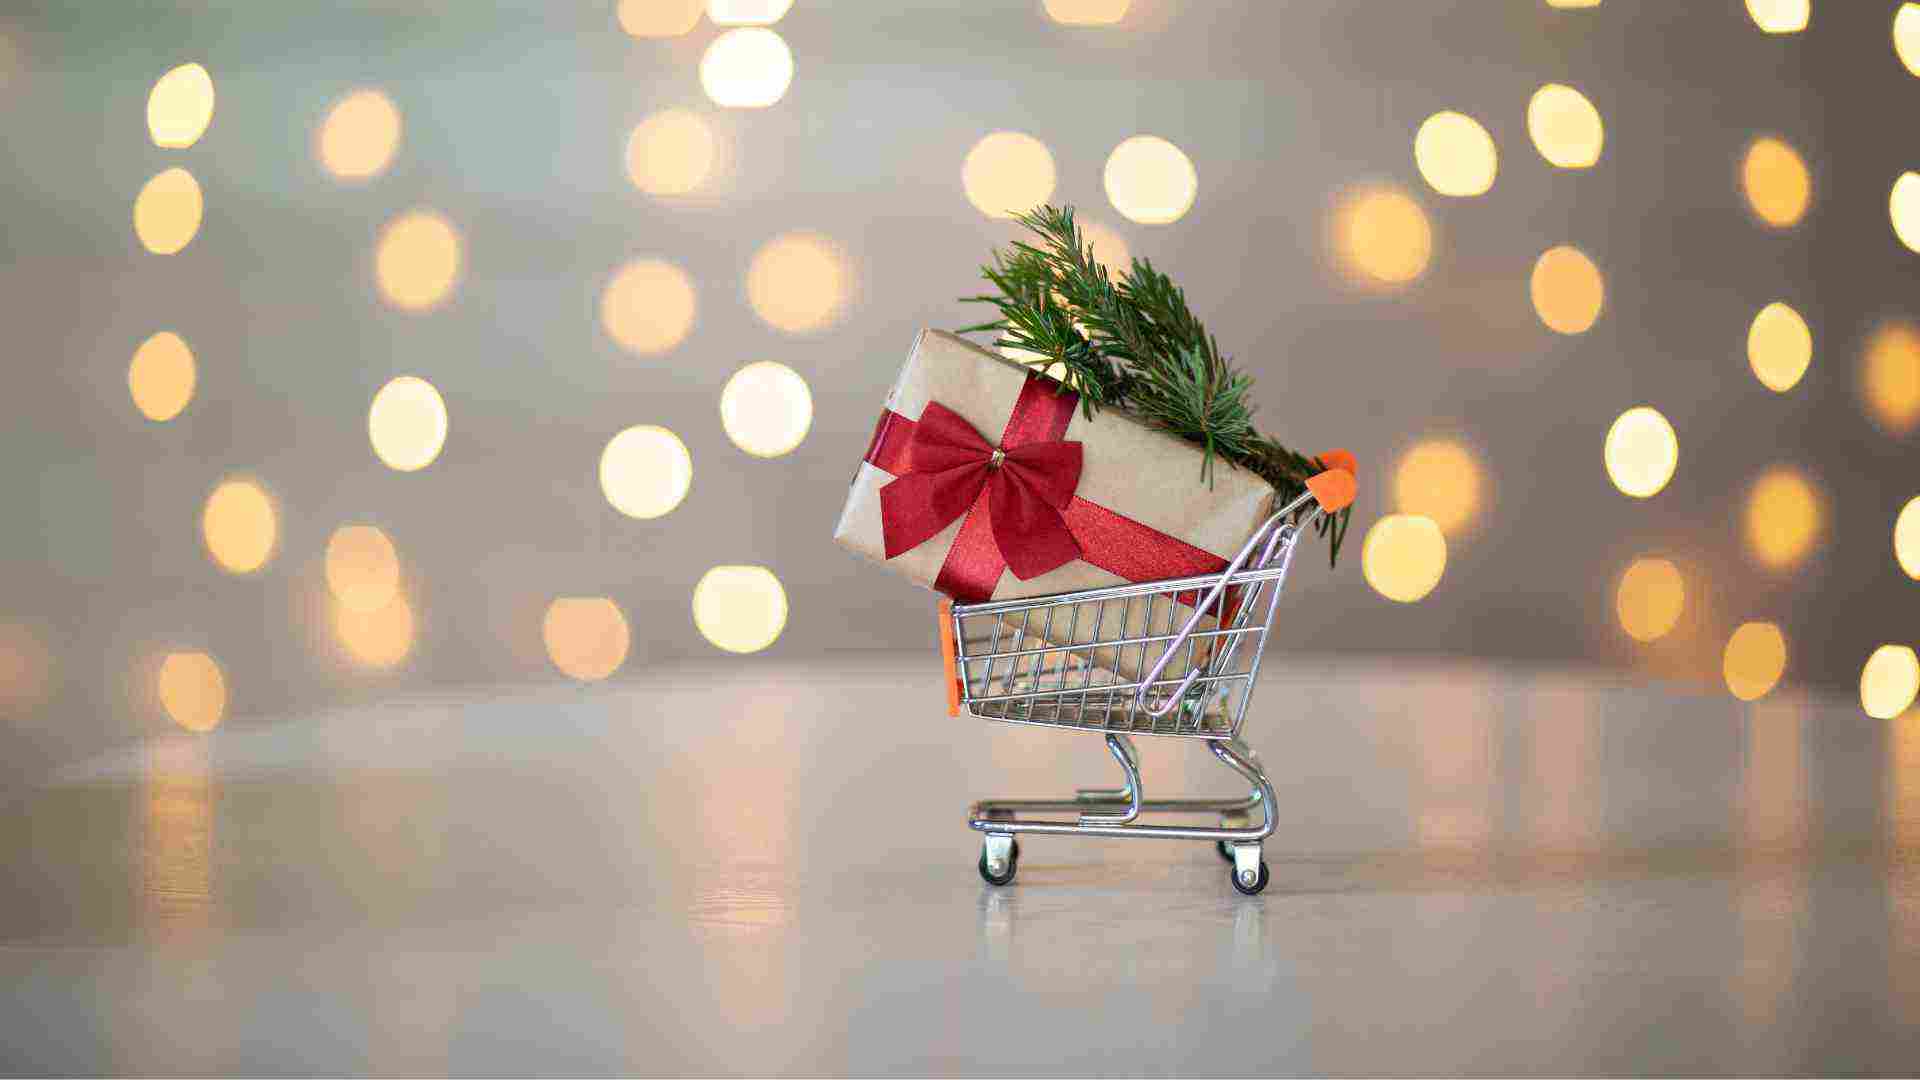 Supermercats oberts a Barcelona per Nadal i Sant Esteve: horaris del 24, 25 i 26 de desembre